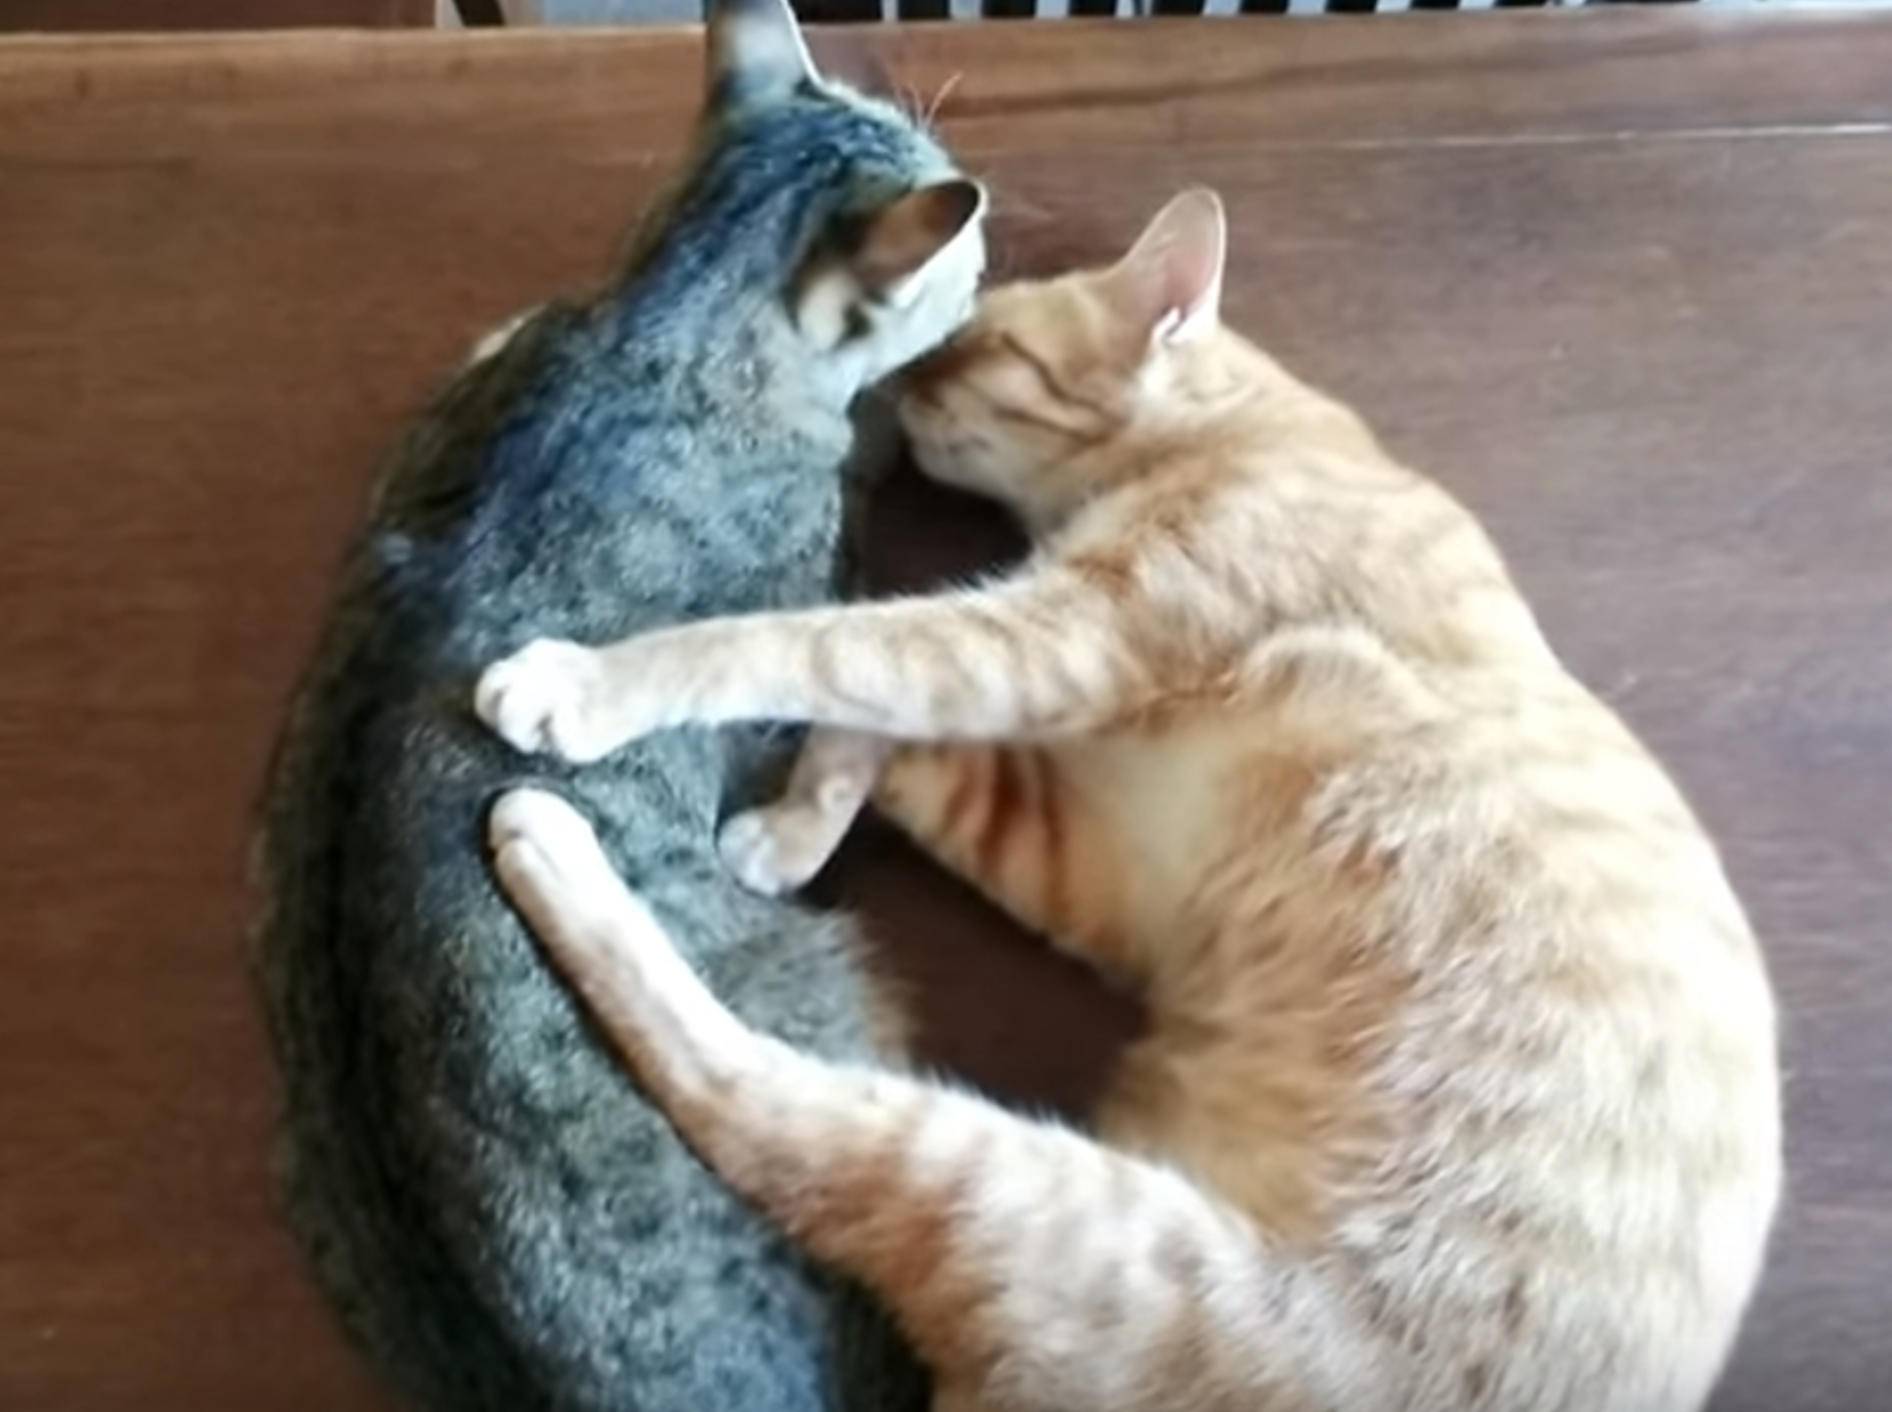 Süße Katzenkumpel: "Los, lass uns kuscheln!" – Bild: YouTube / elephantnews